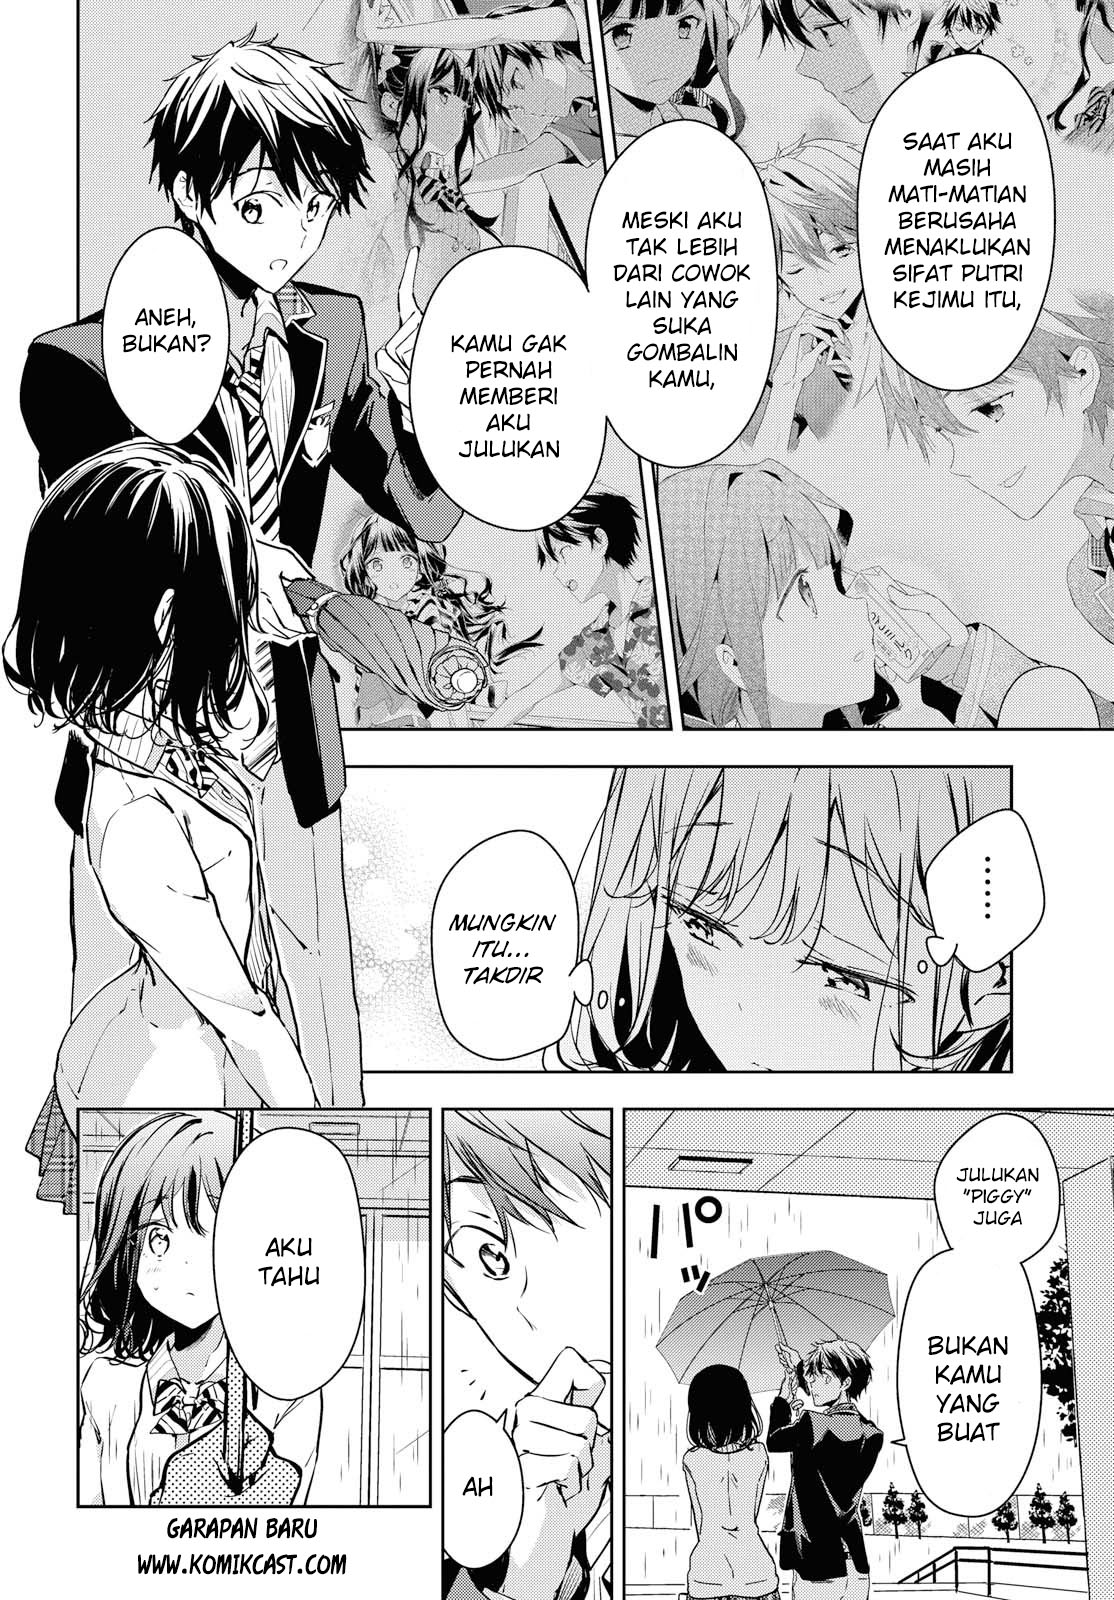 Masamune-kun no Revenge after school Chapter 1